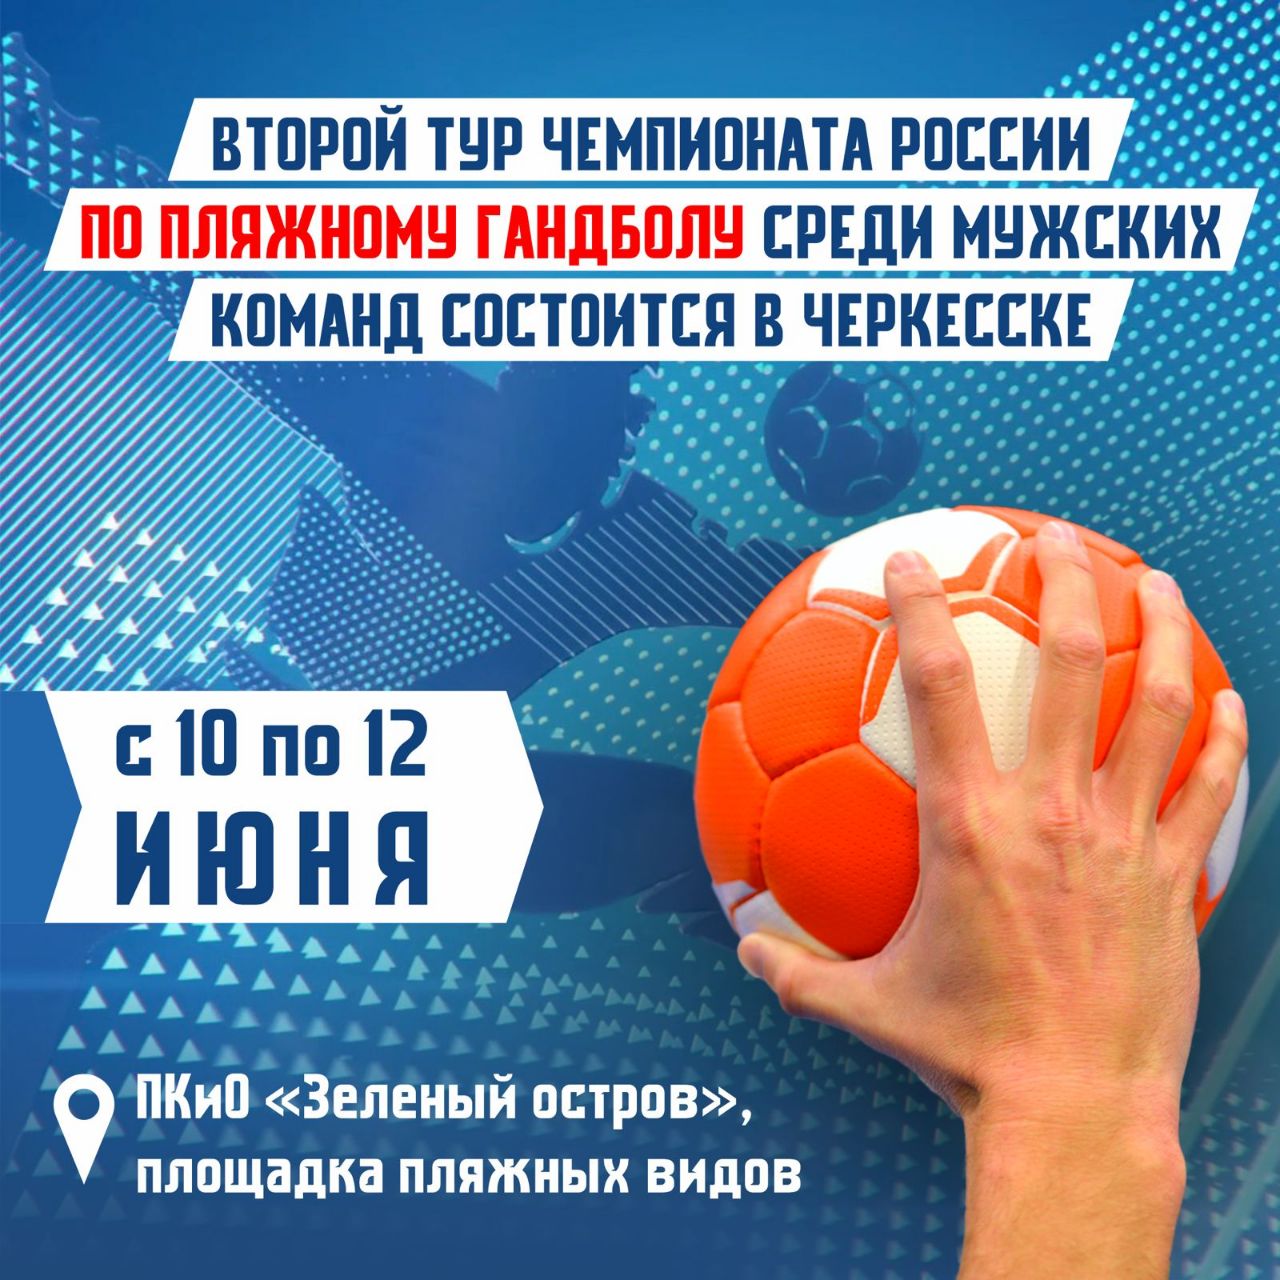 В Карачаево-Черкесии состоится турнир по пляжному гандболу